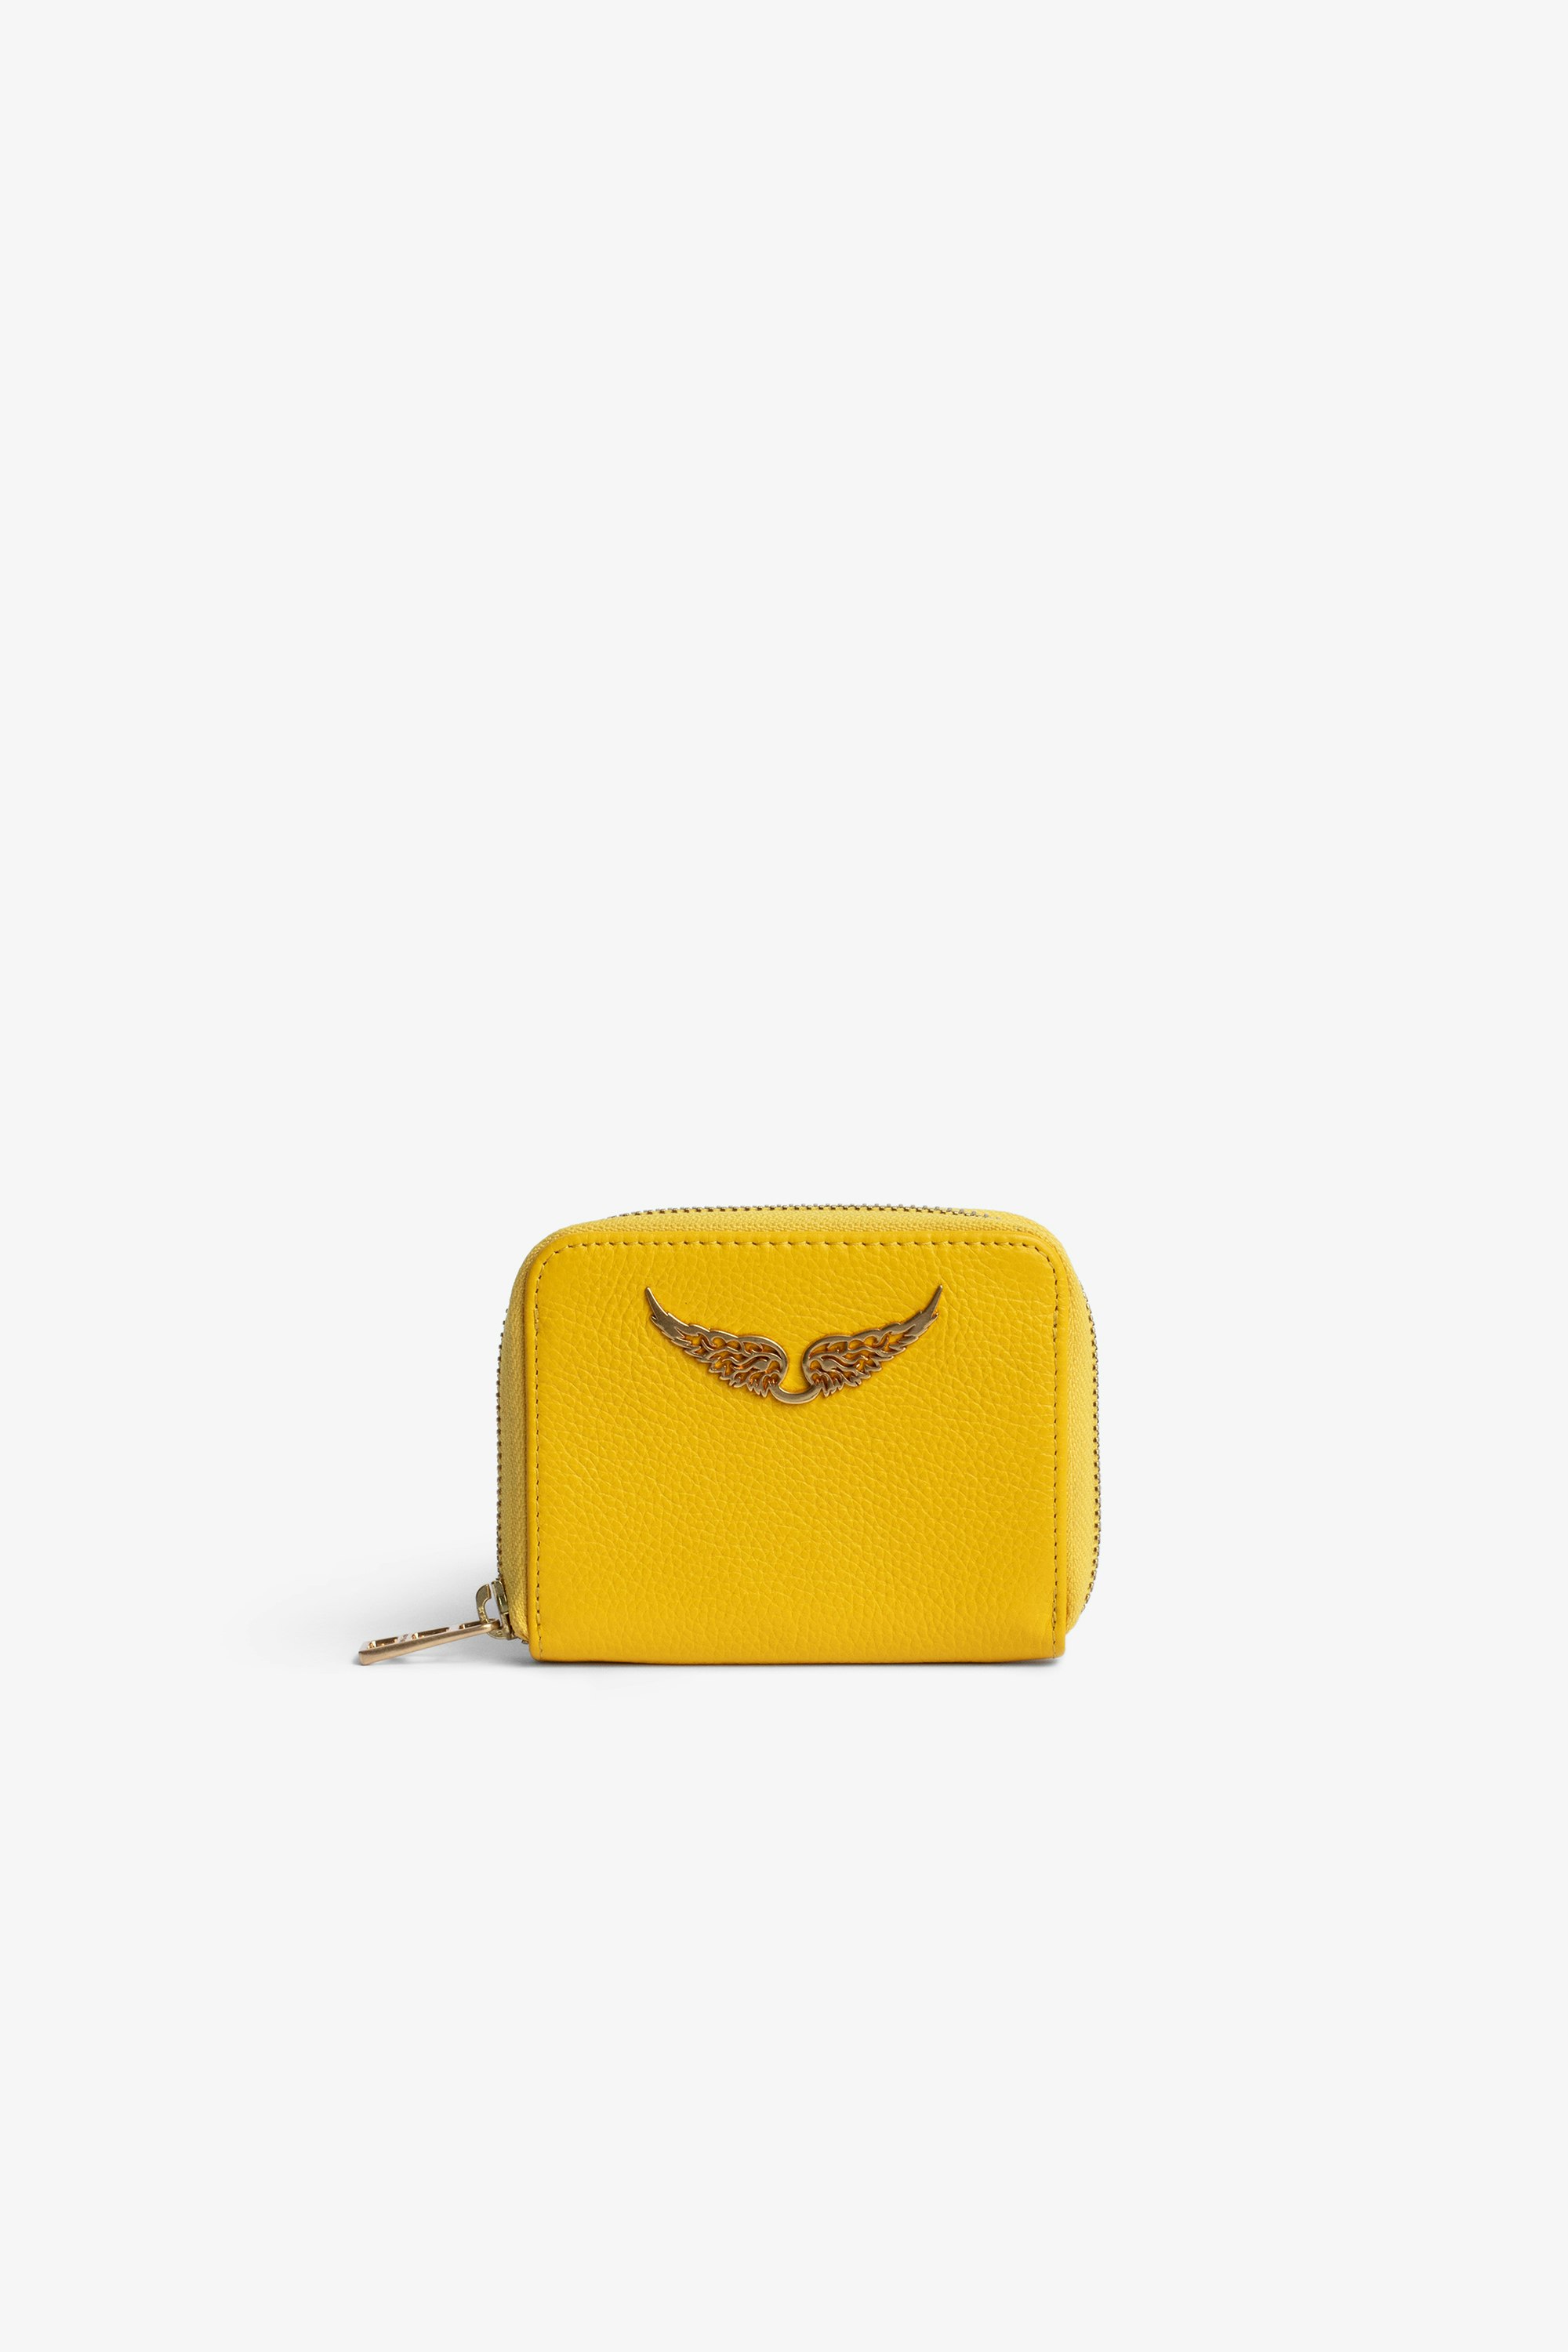 Portemonnaie Mini ZV Gelbes Damen-Portemonnaie aus genarbtem Leder